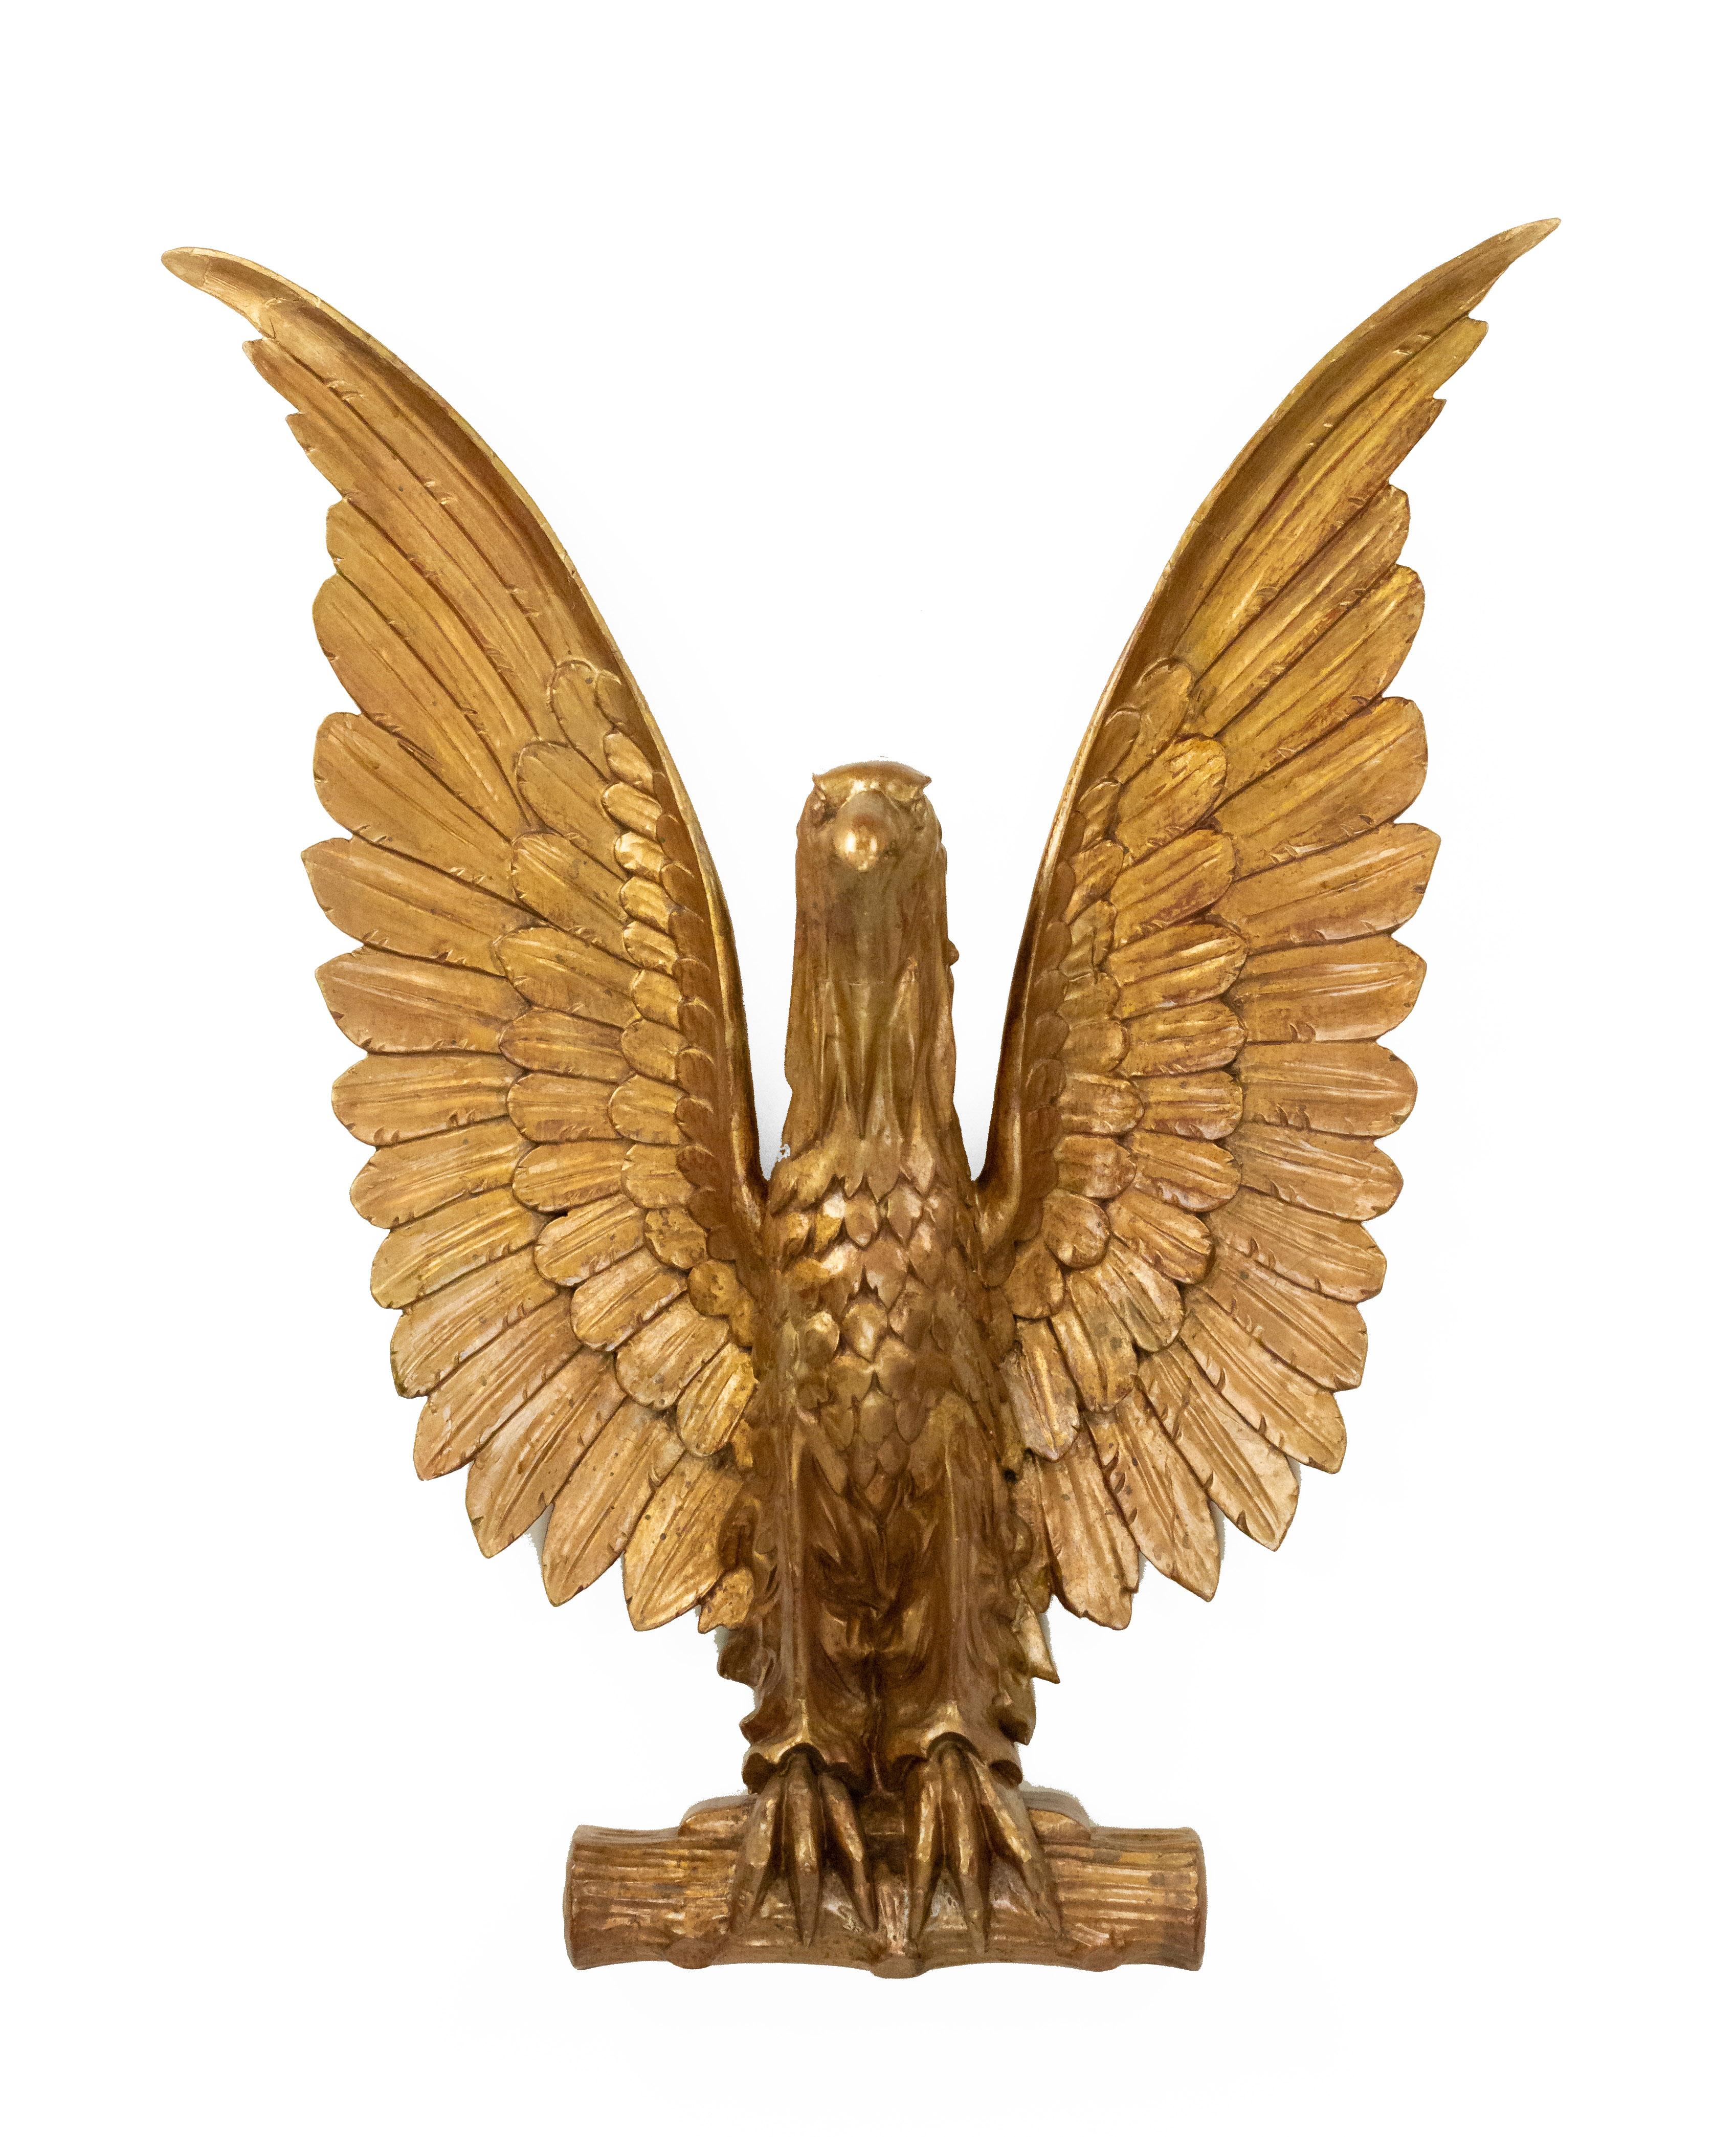 amerikanische vergoldete Adler-Wandtafel aus dem 20. Jahrhundert mit ausgebreiteten Flügeln.